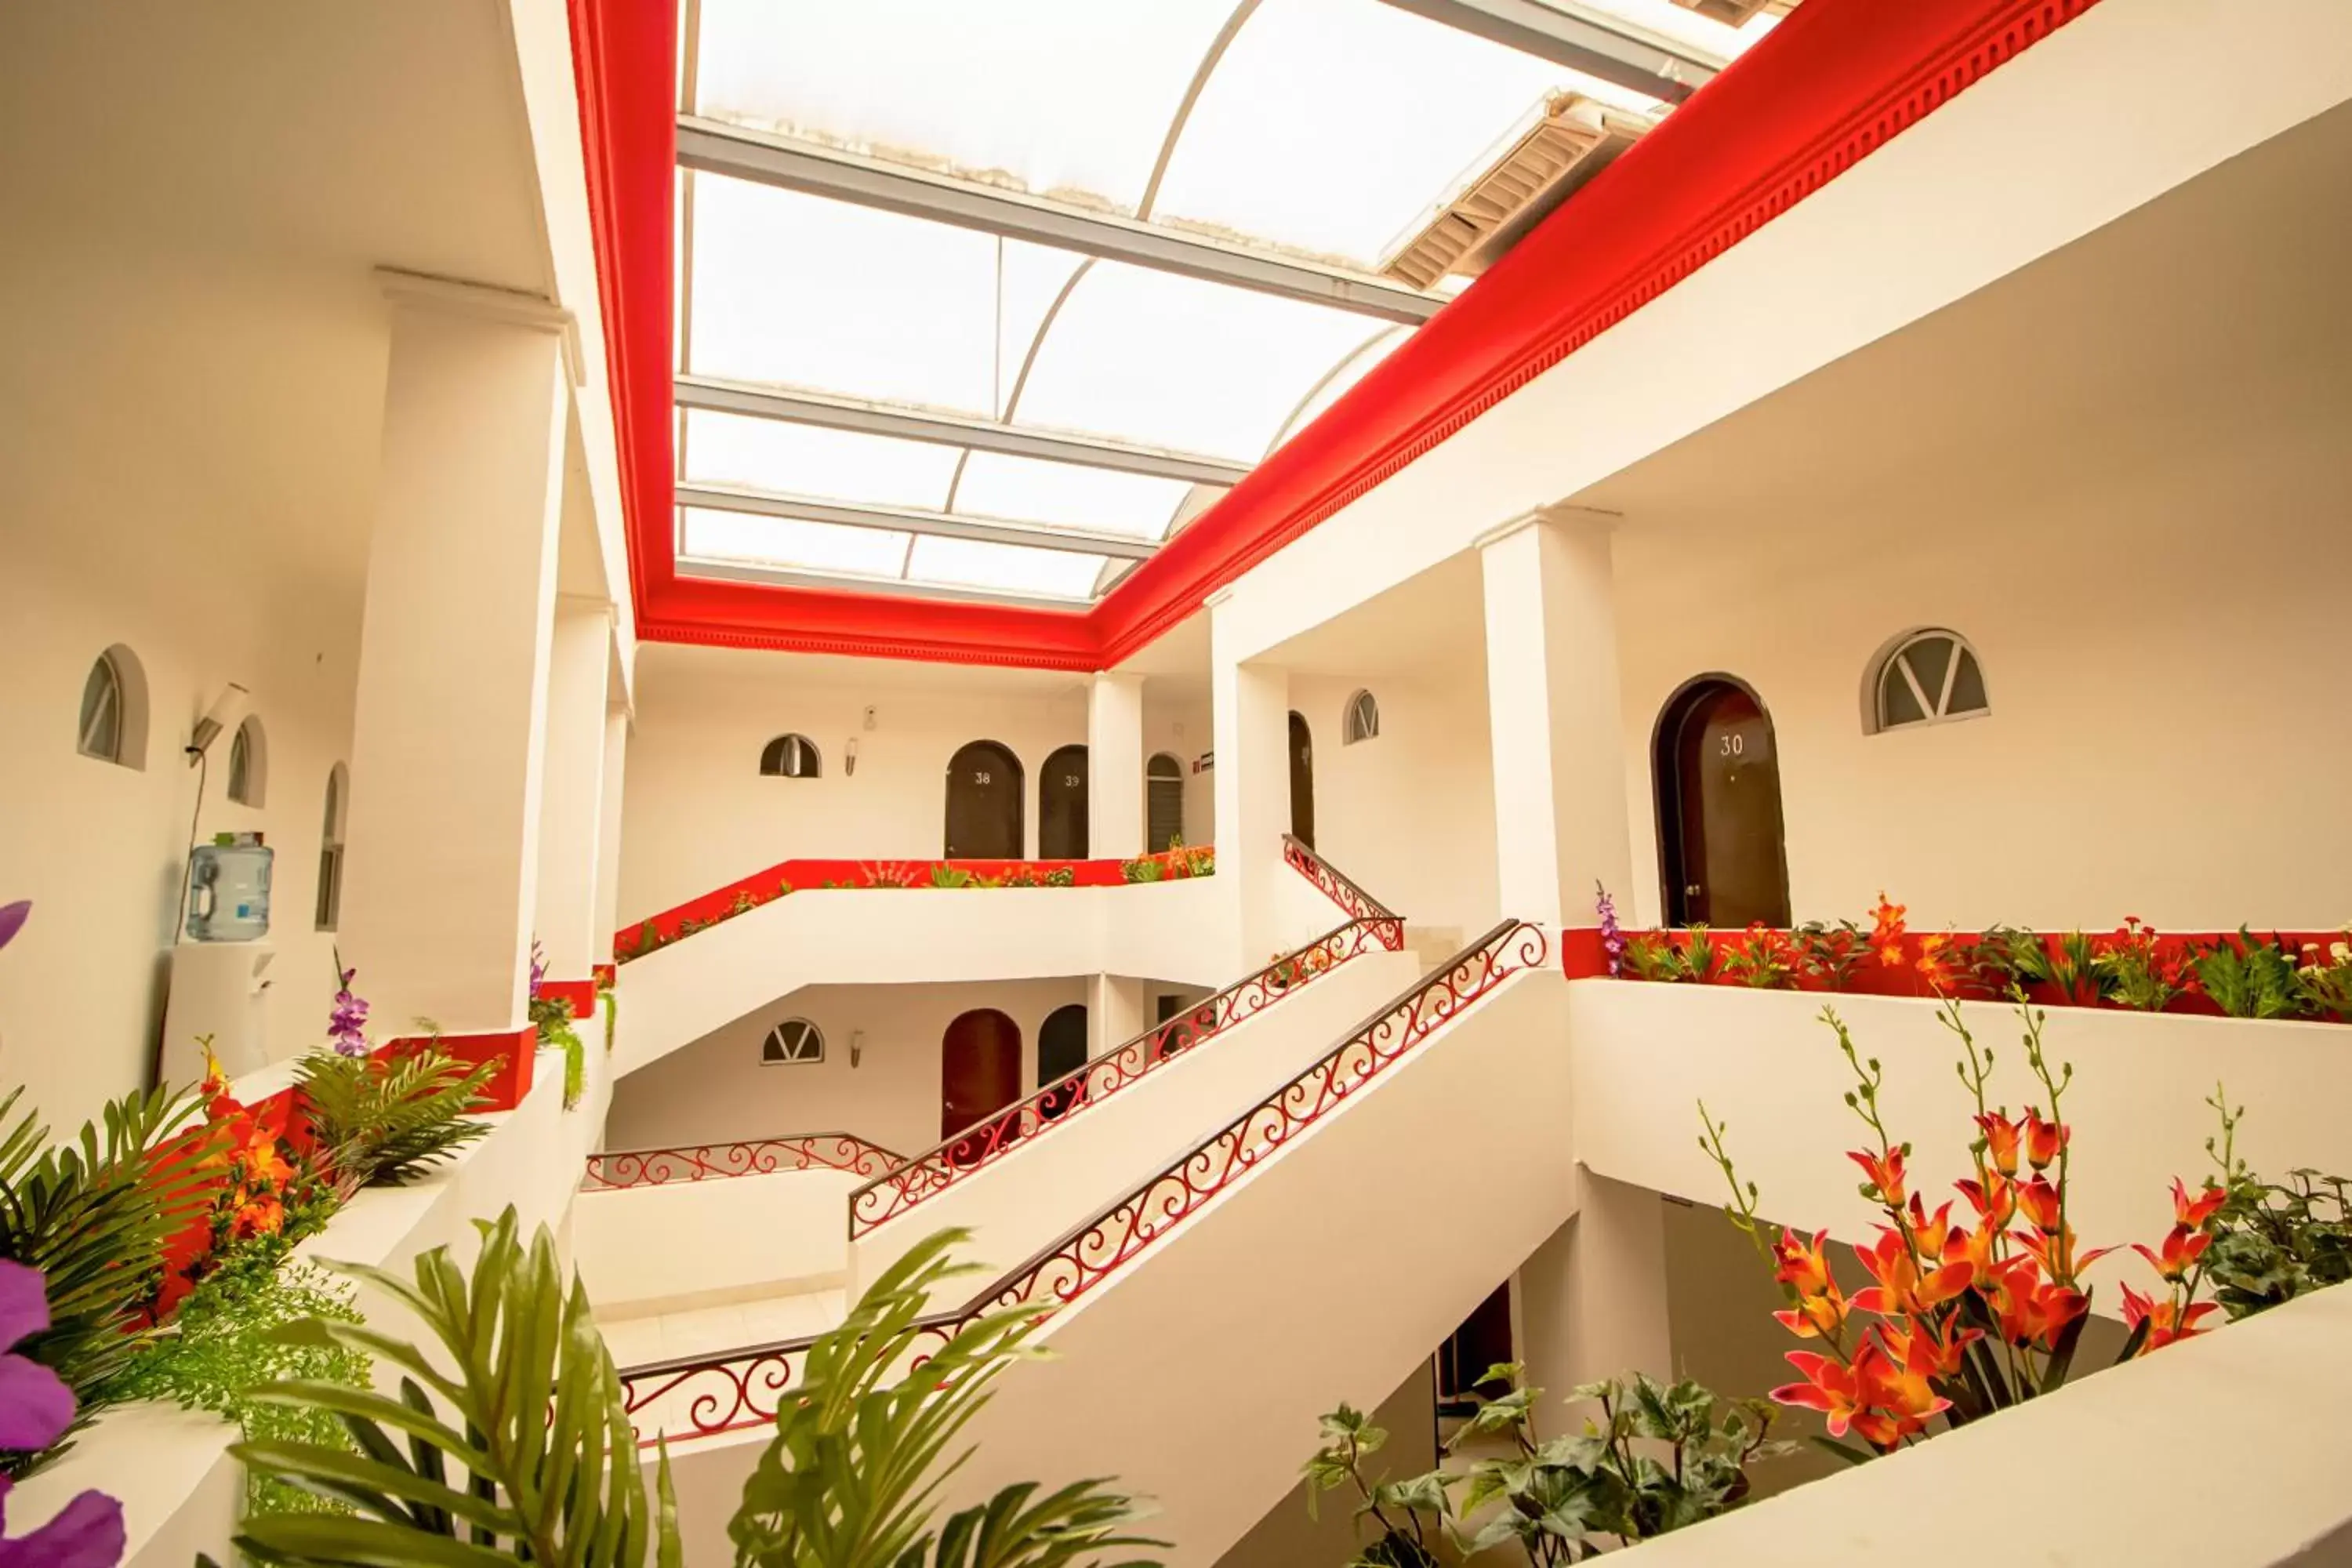 Area and facilities in Hotel El Español Centro Historico